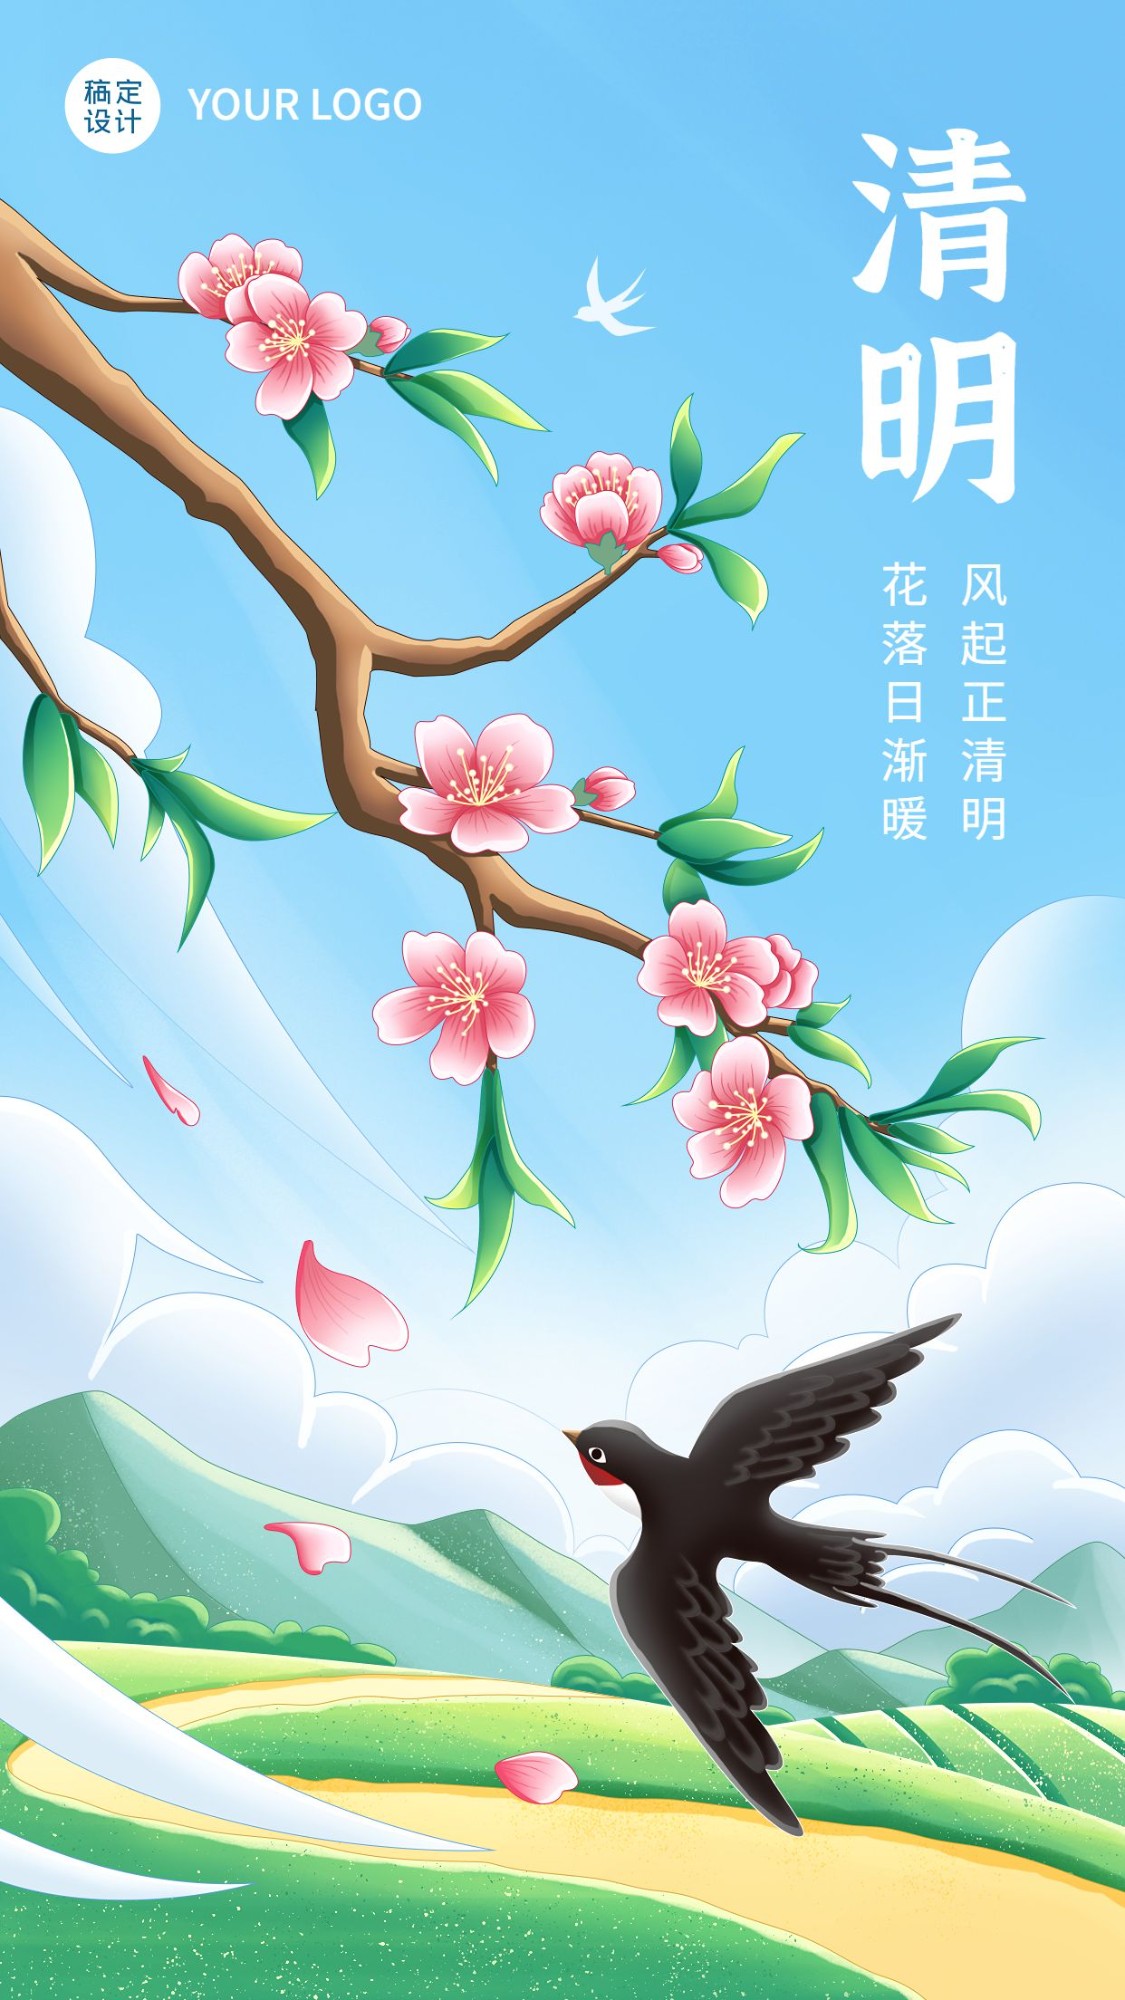 清明节节日祝福手绘插画手机海报预览效果